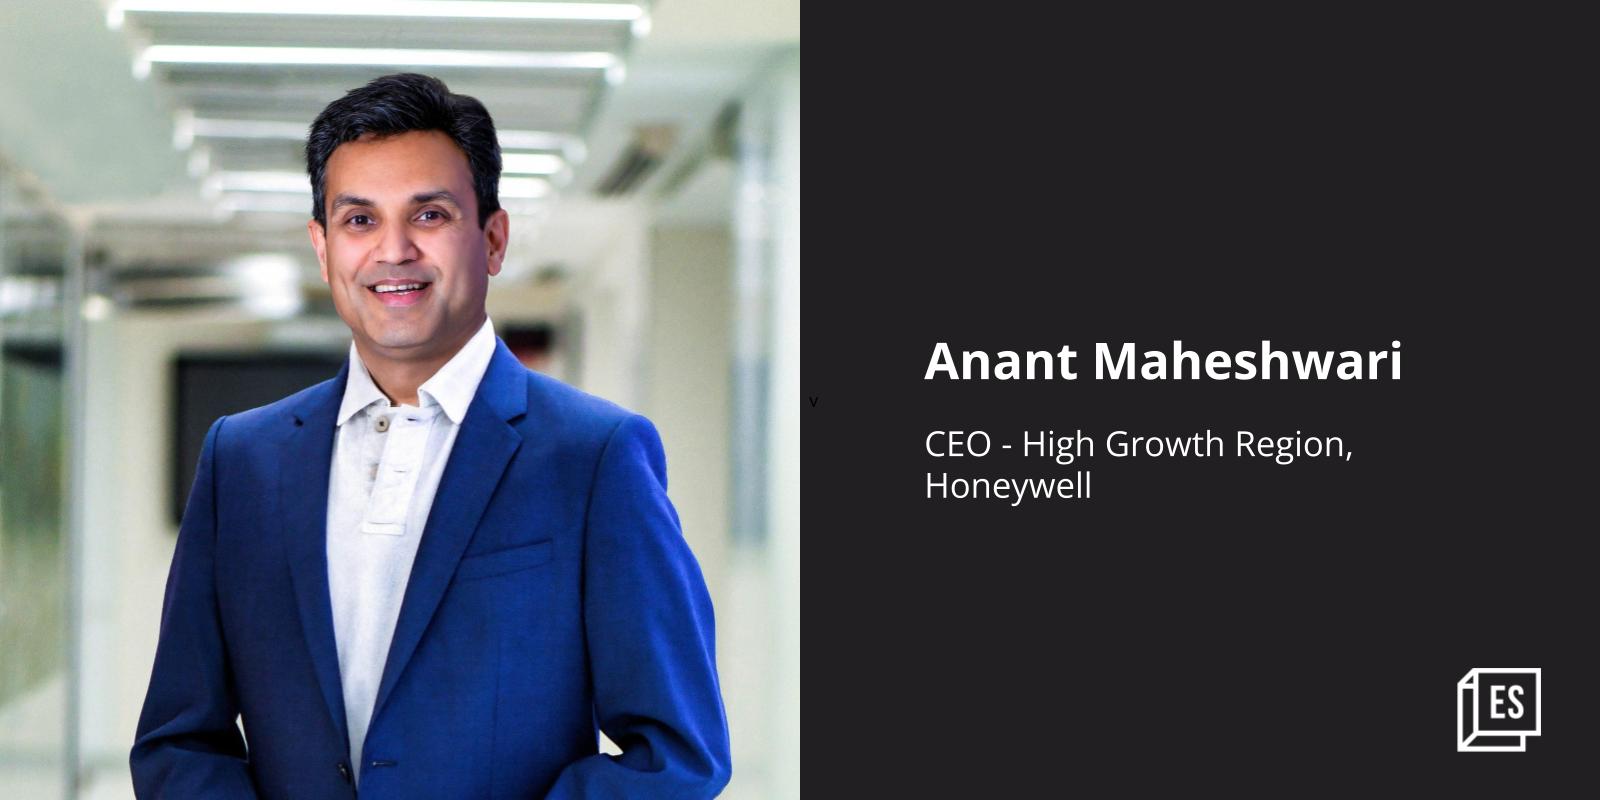 Former Microsoft India head Anant Maheshwari returns to Honeywell